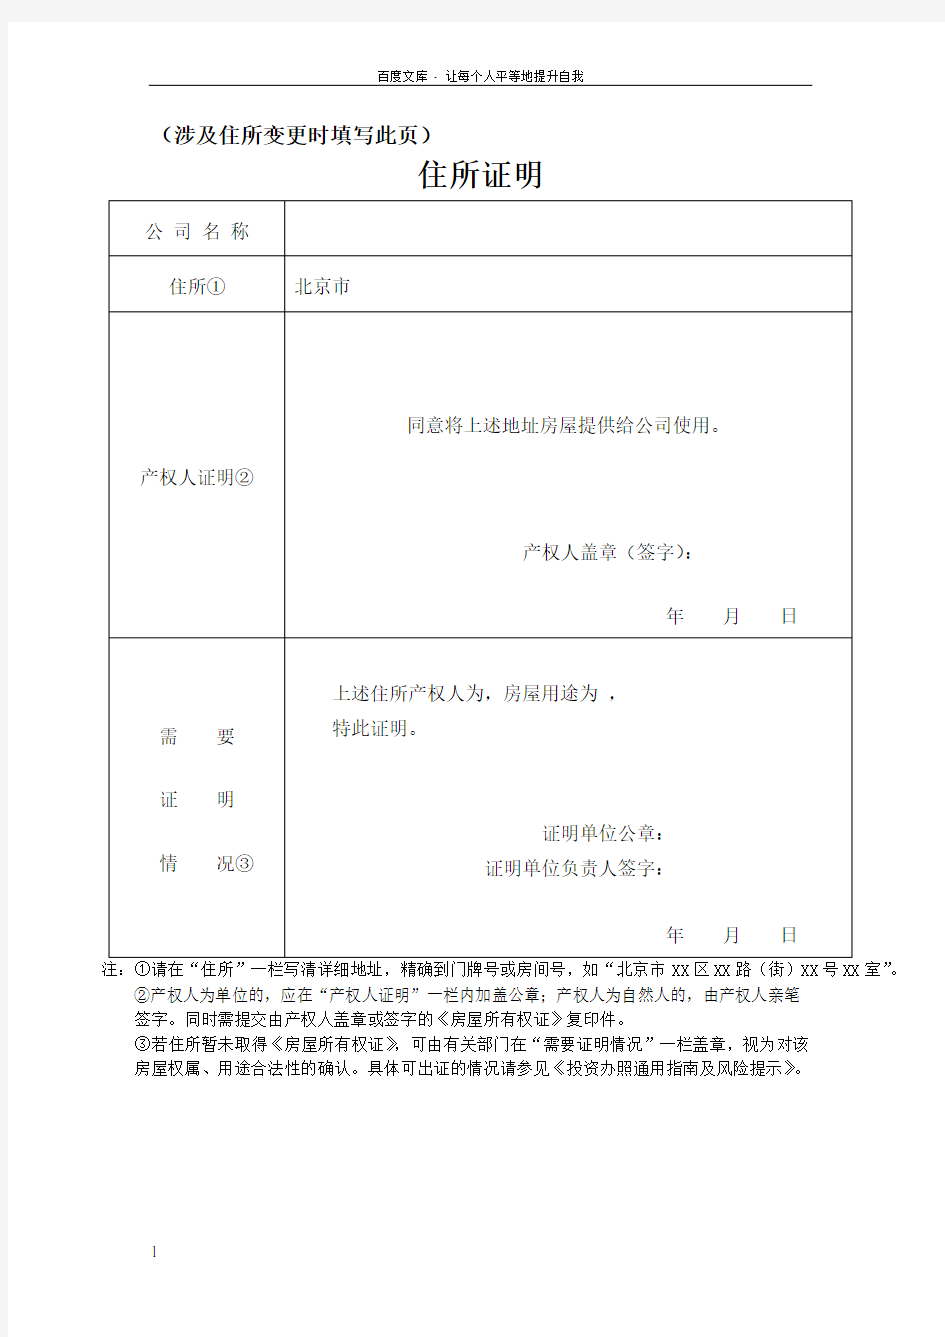 住所证明北京工商局表格提供表格(变更)